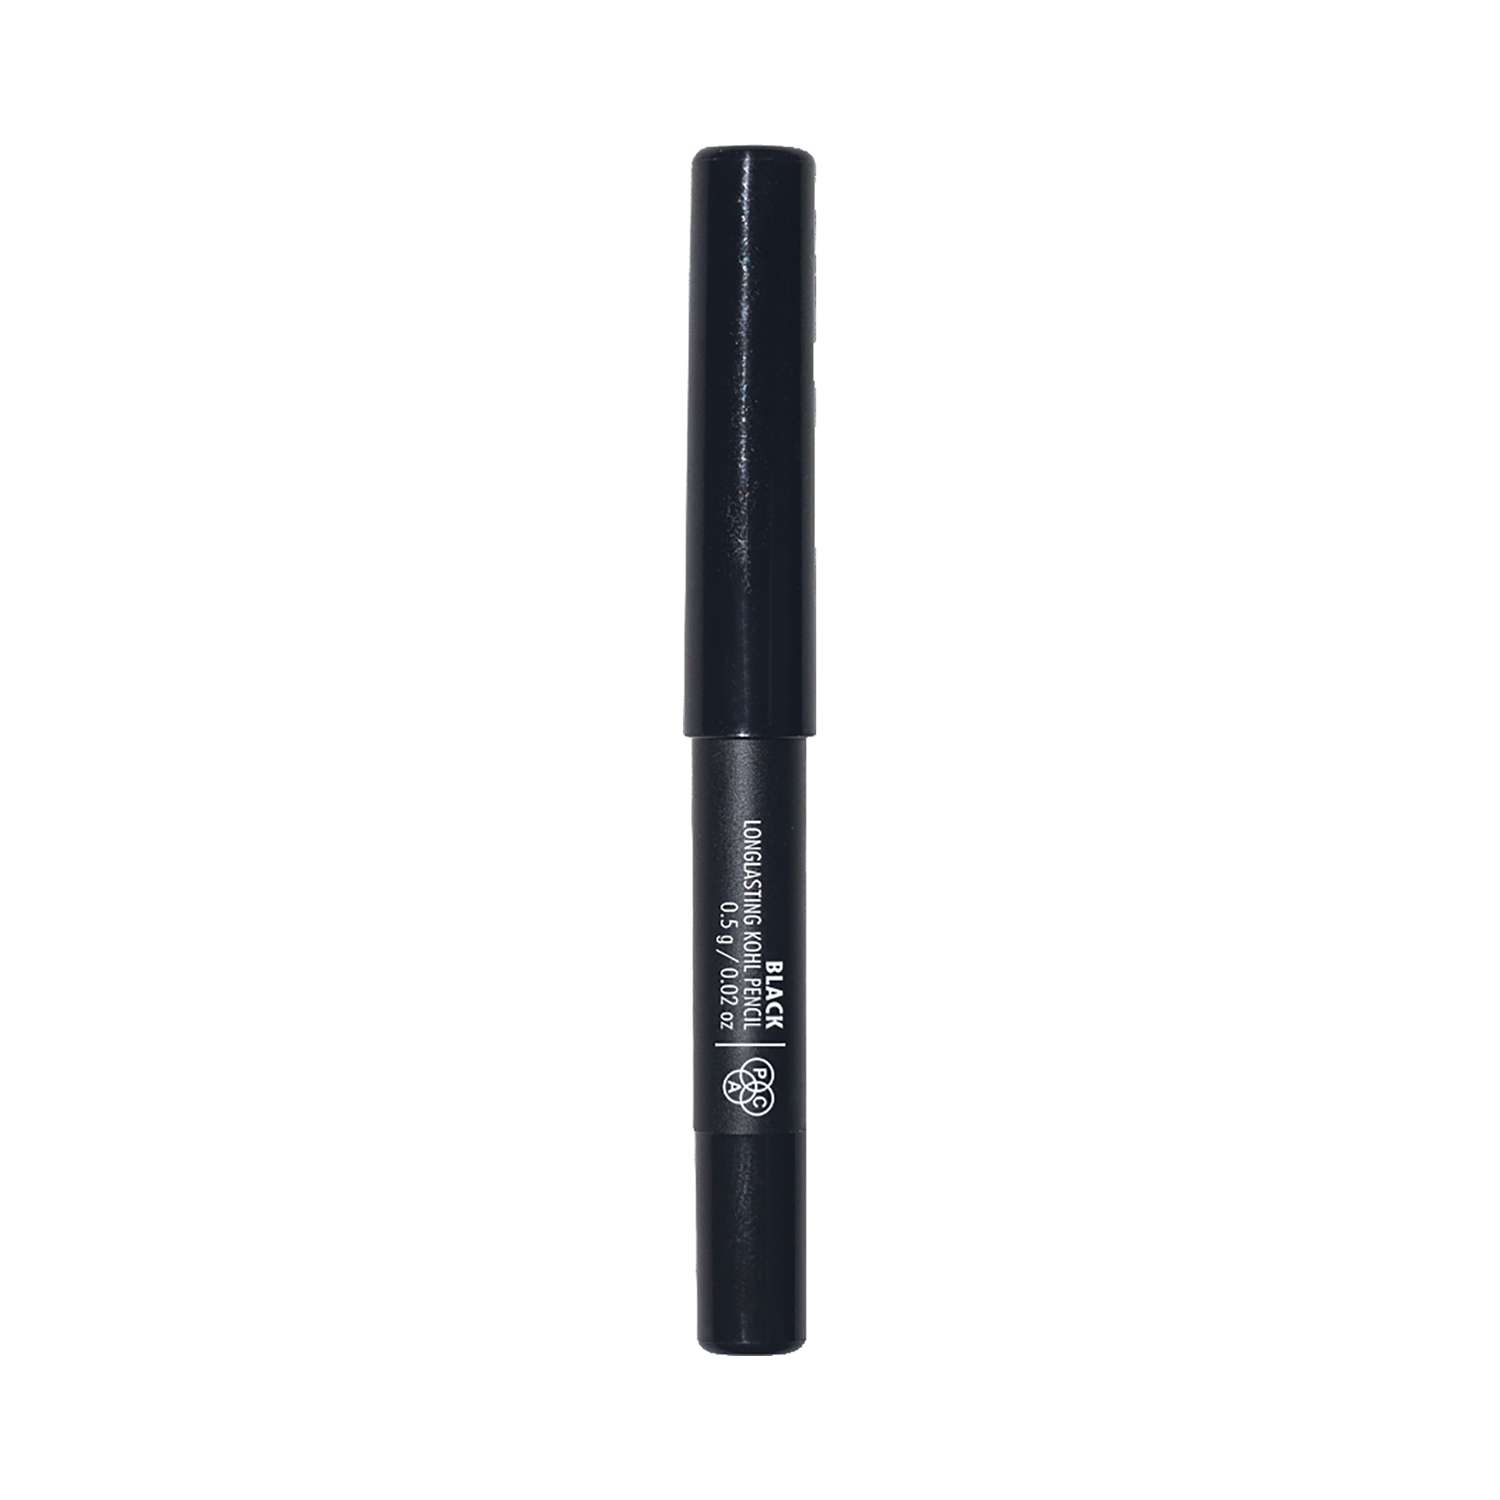 PAC | PAC Longlasting Kohl Pencil Mini - Black (0.5g)